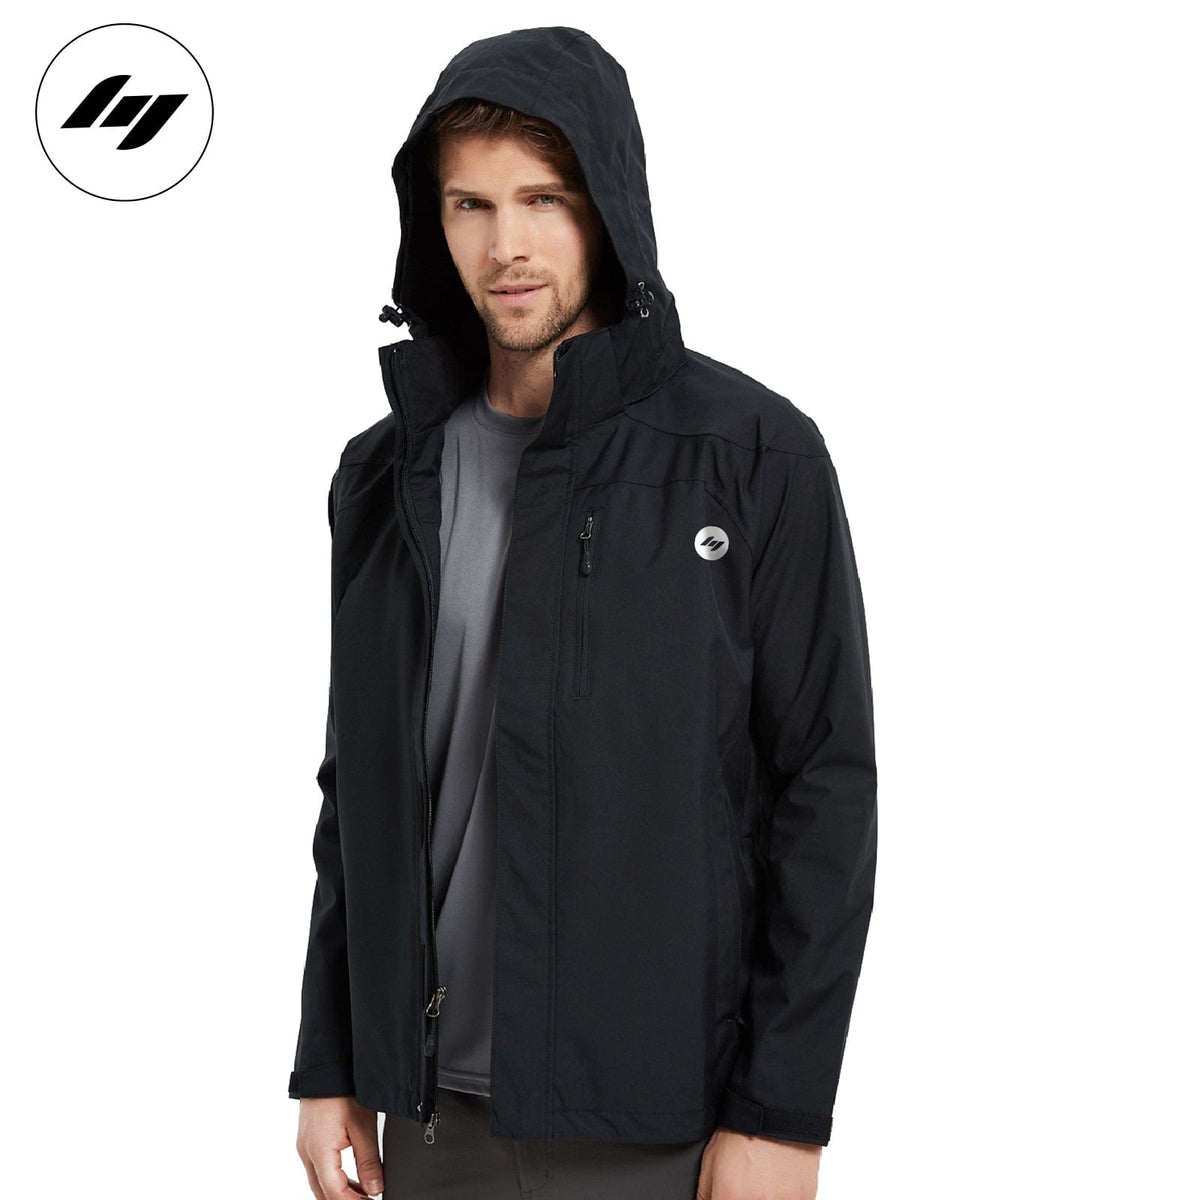 Men's Lightweight Waterproof Windproof Rain Jacket with YKK zippers jackets M / Black Mier Sports